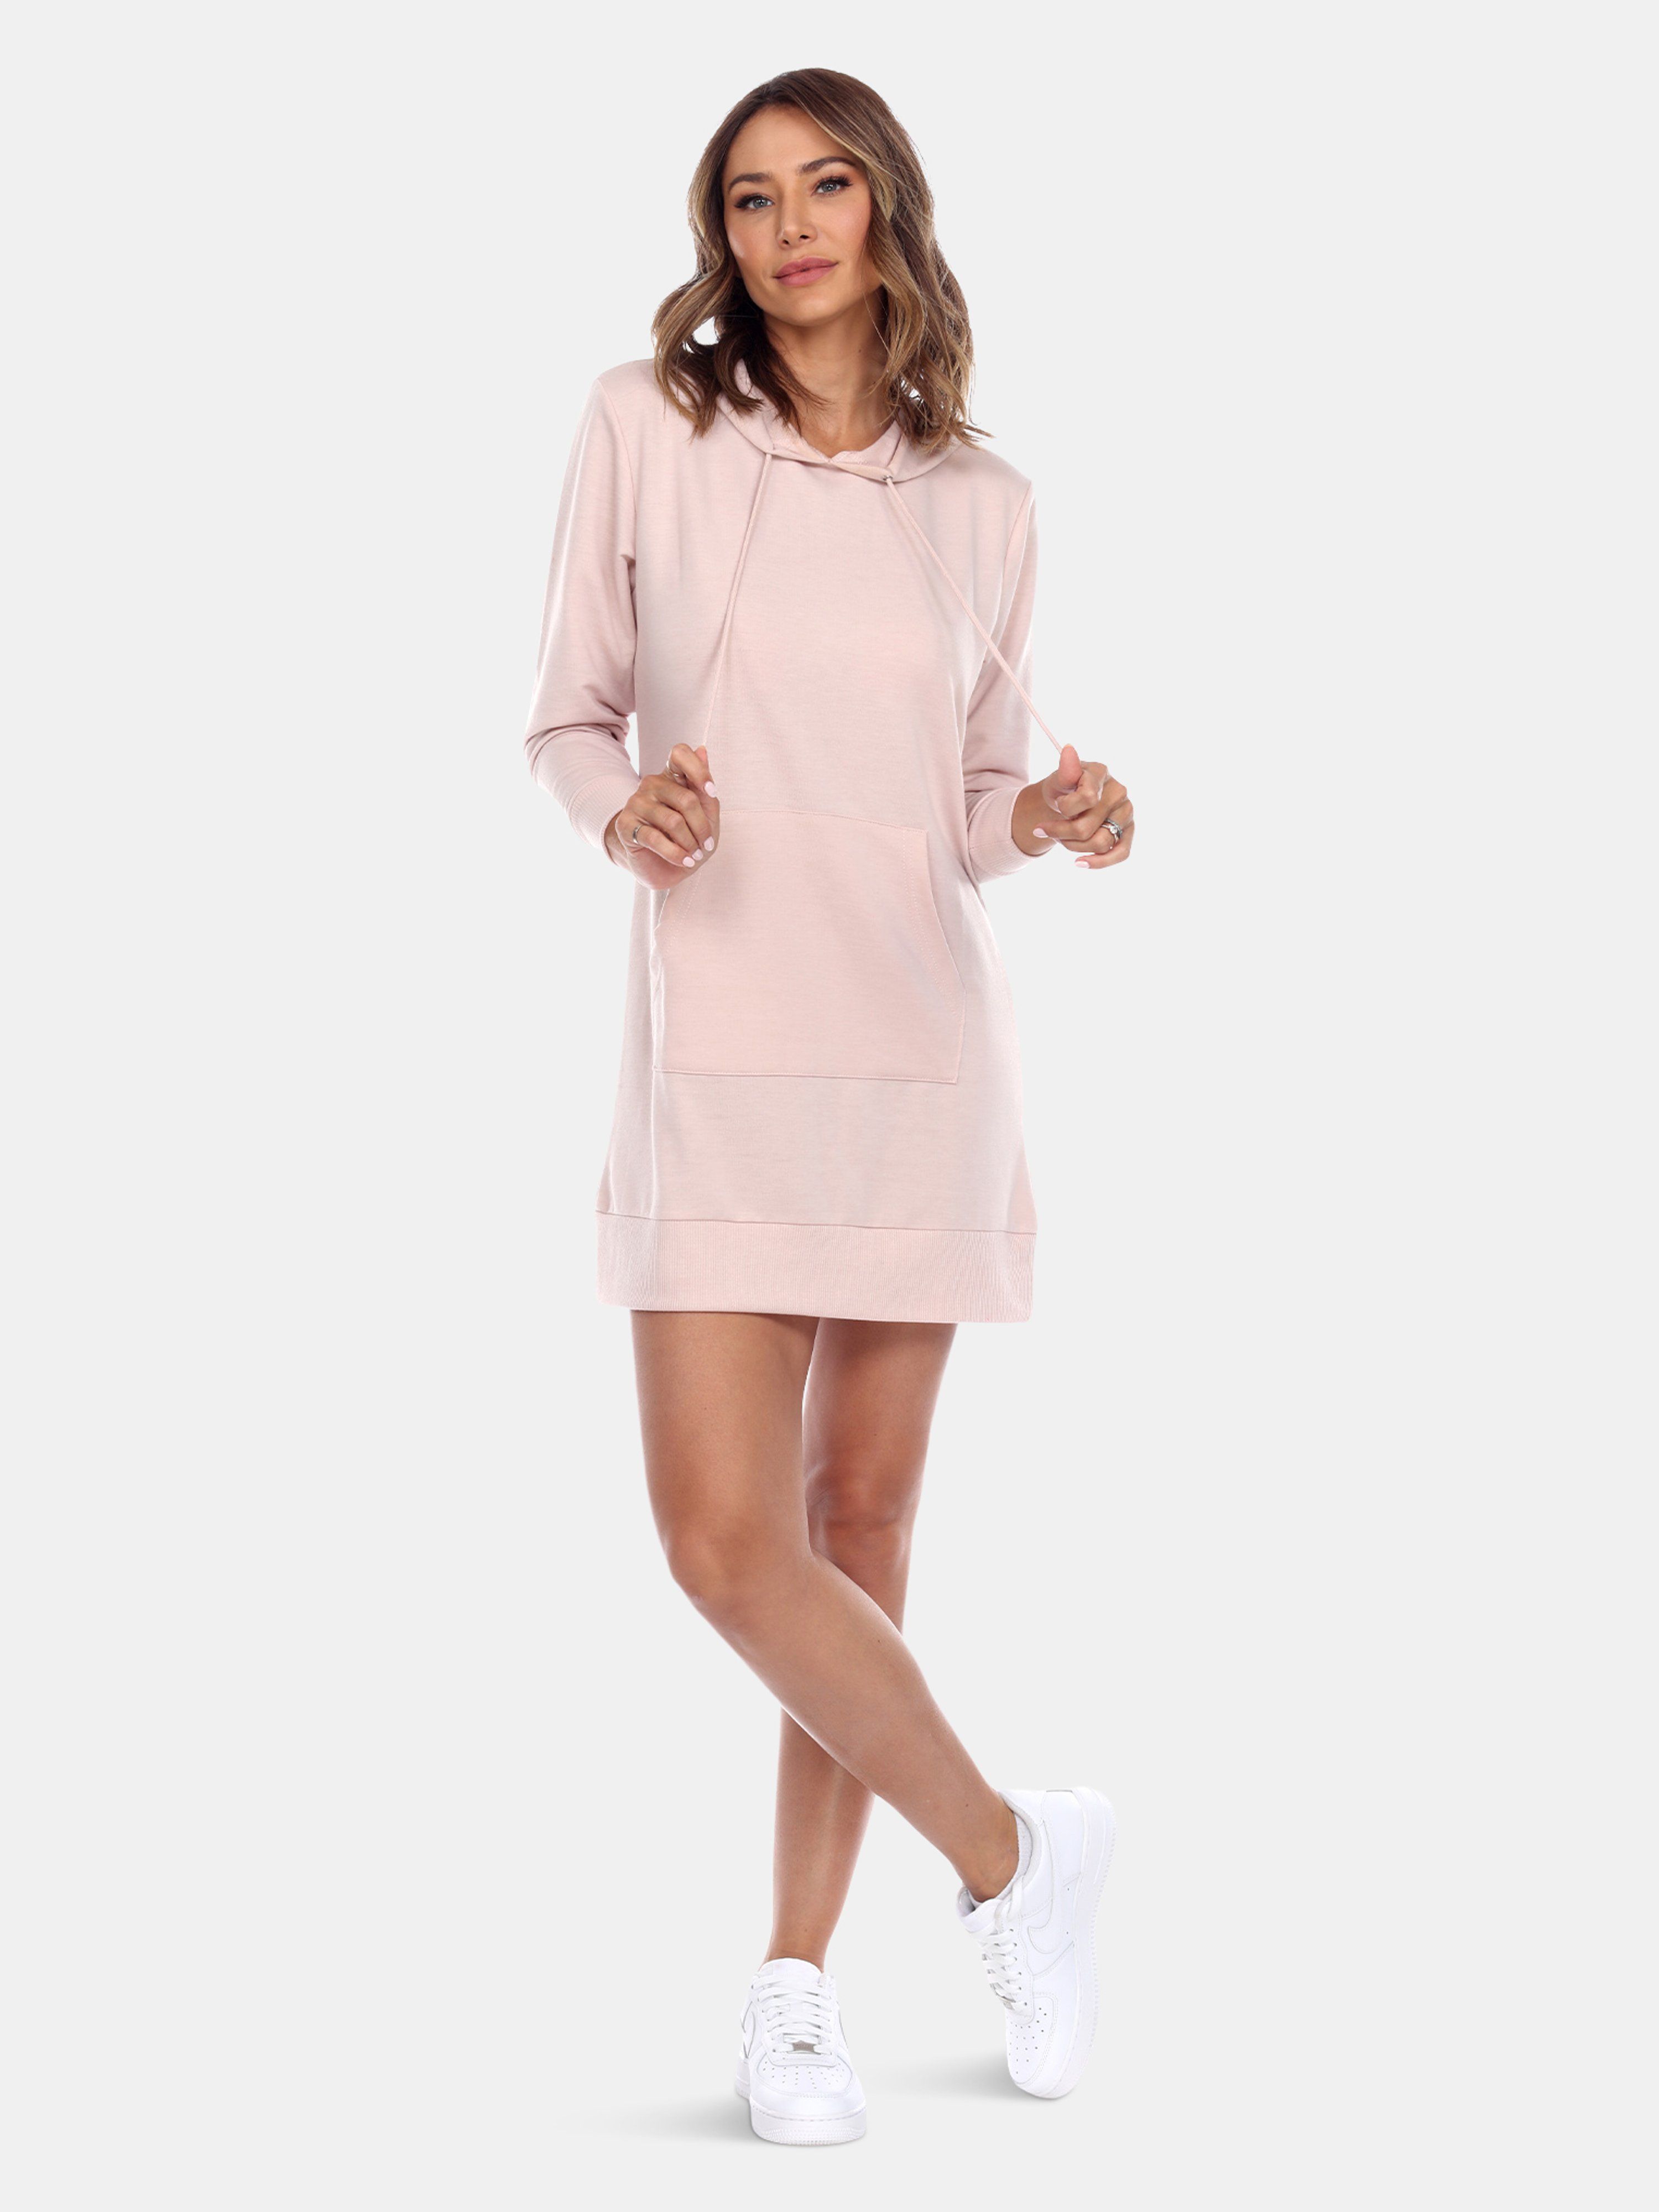 Women\'s Hoodie Sweatshirt Dress - XL - Also in: L, S, M | Verishop